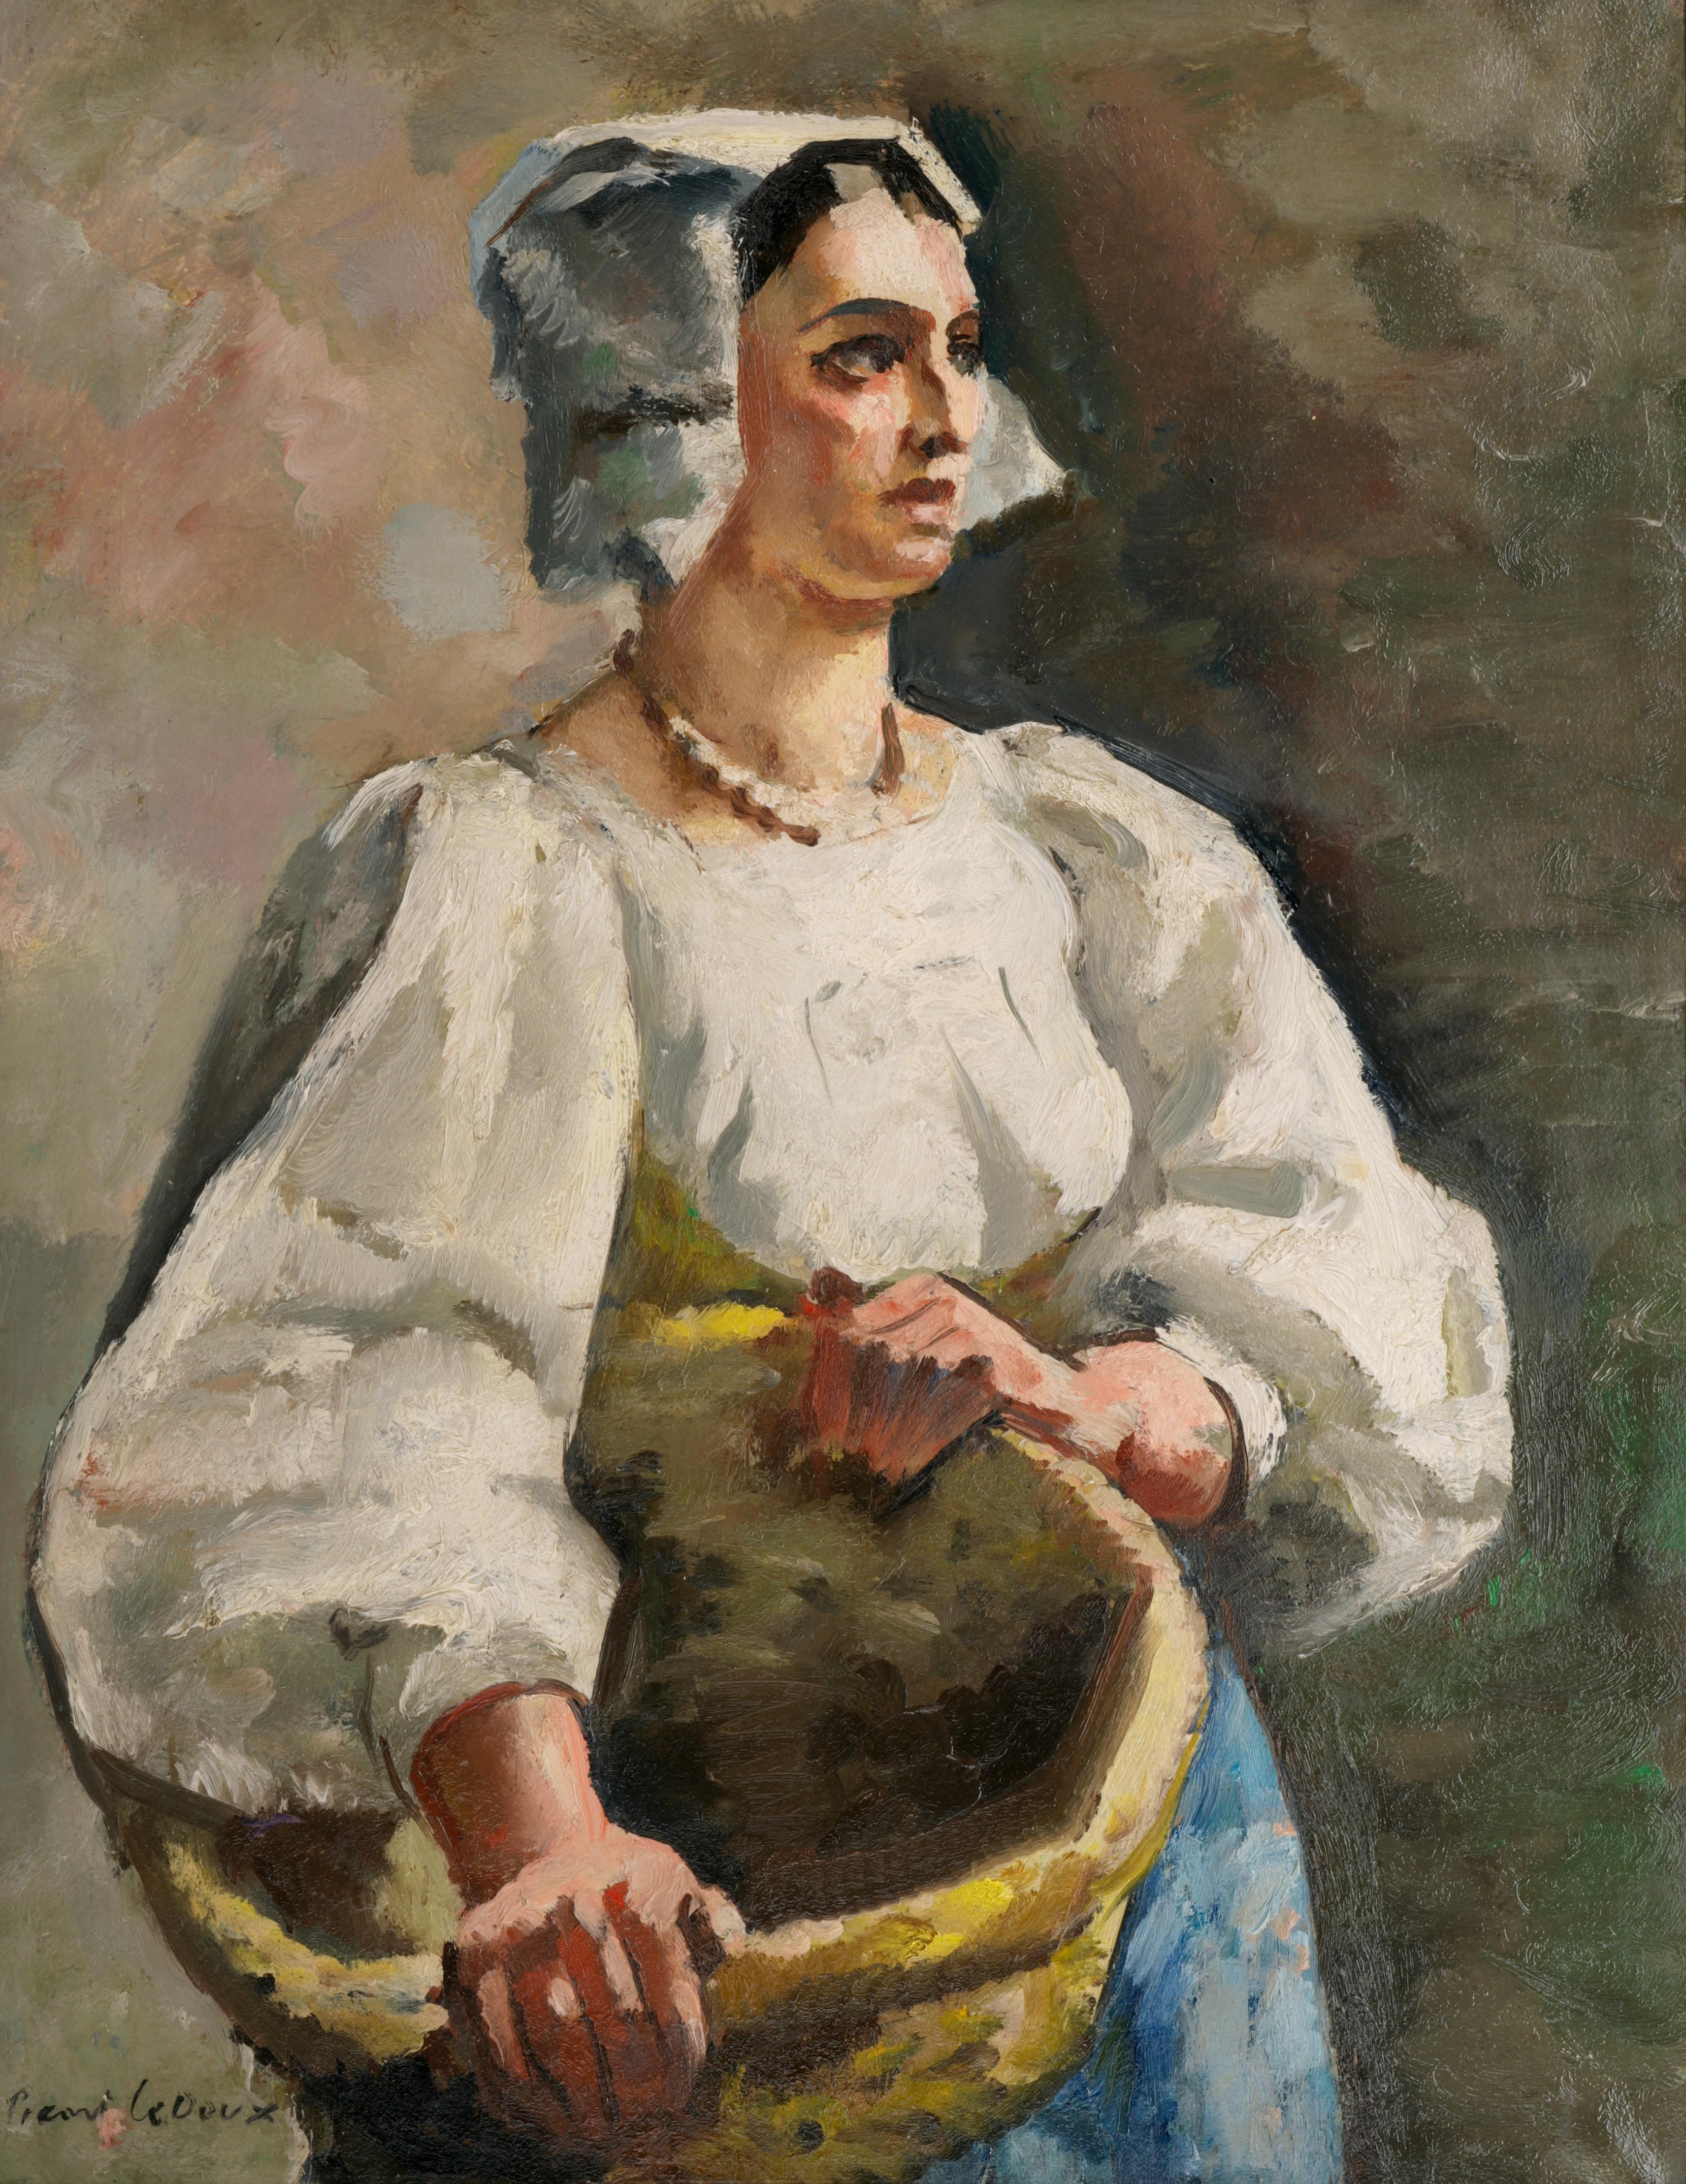 L'Italie, huile sur toile, 1924 - Painting de Charles Picart le Doux